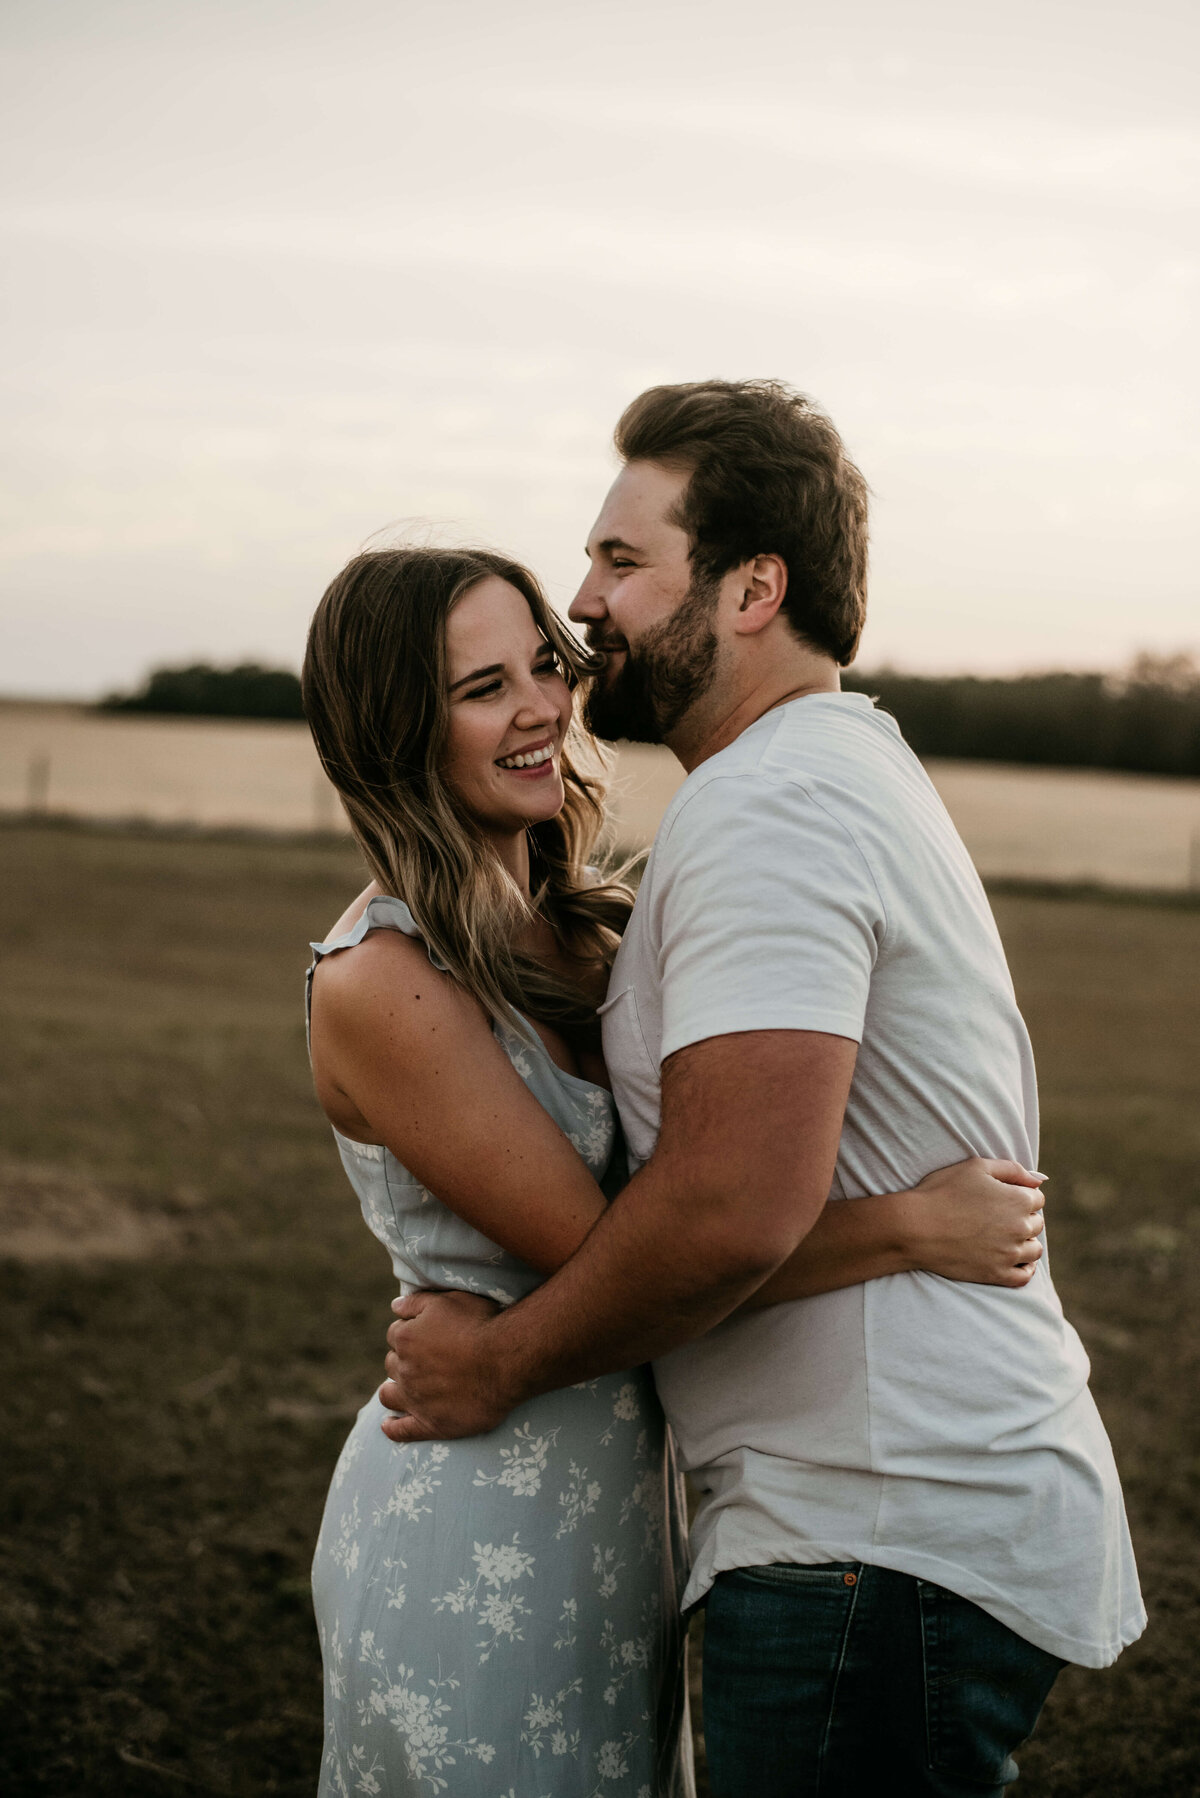 Man hugs his wife in field